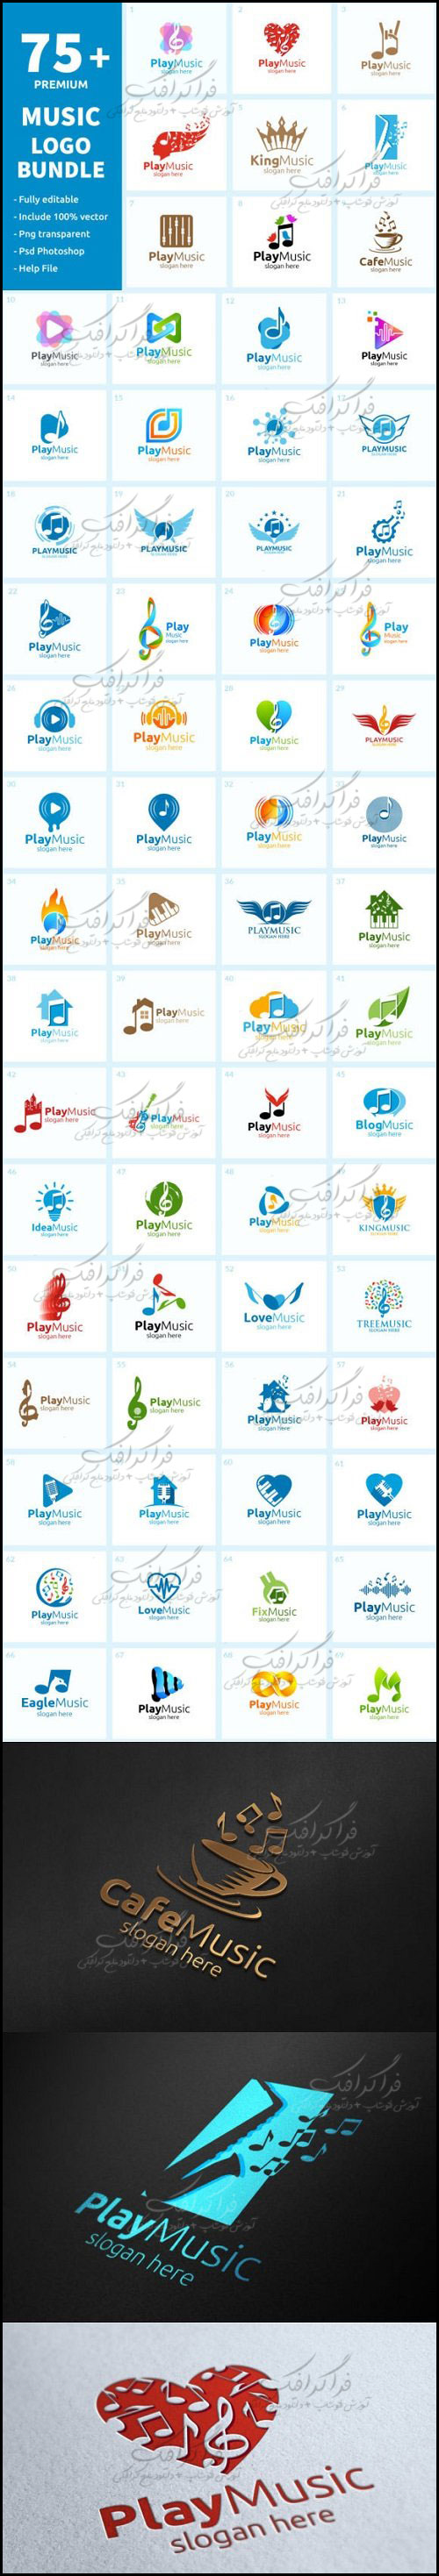 دانلود لوگو های موسیقی Music Logos - شماره 4